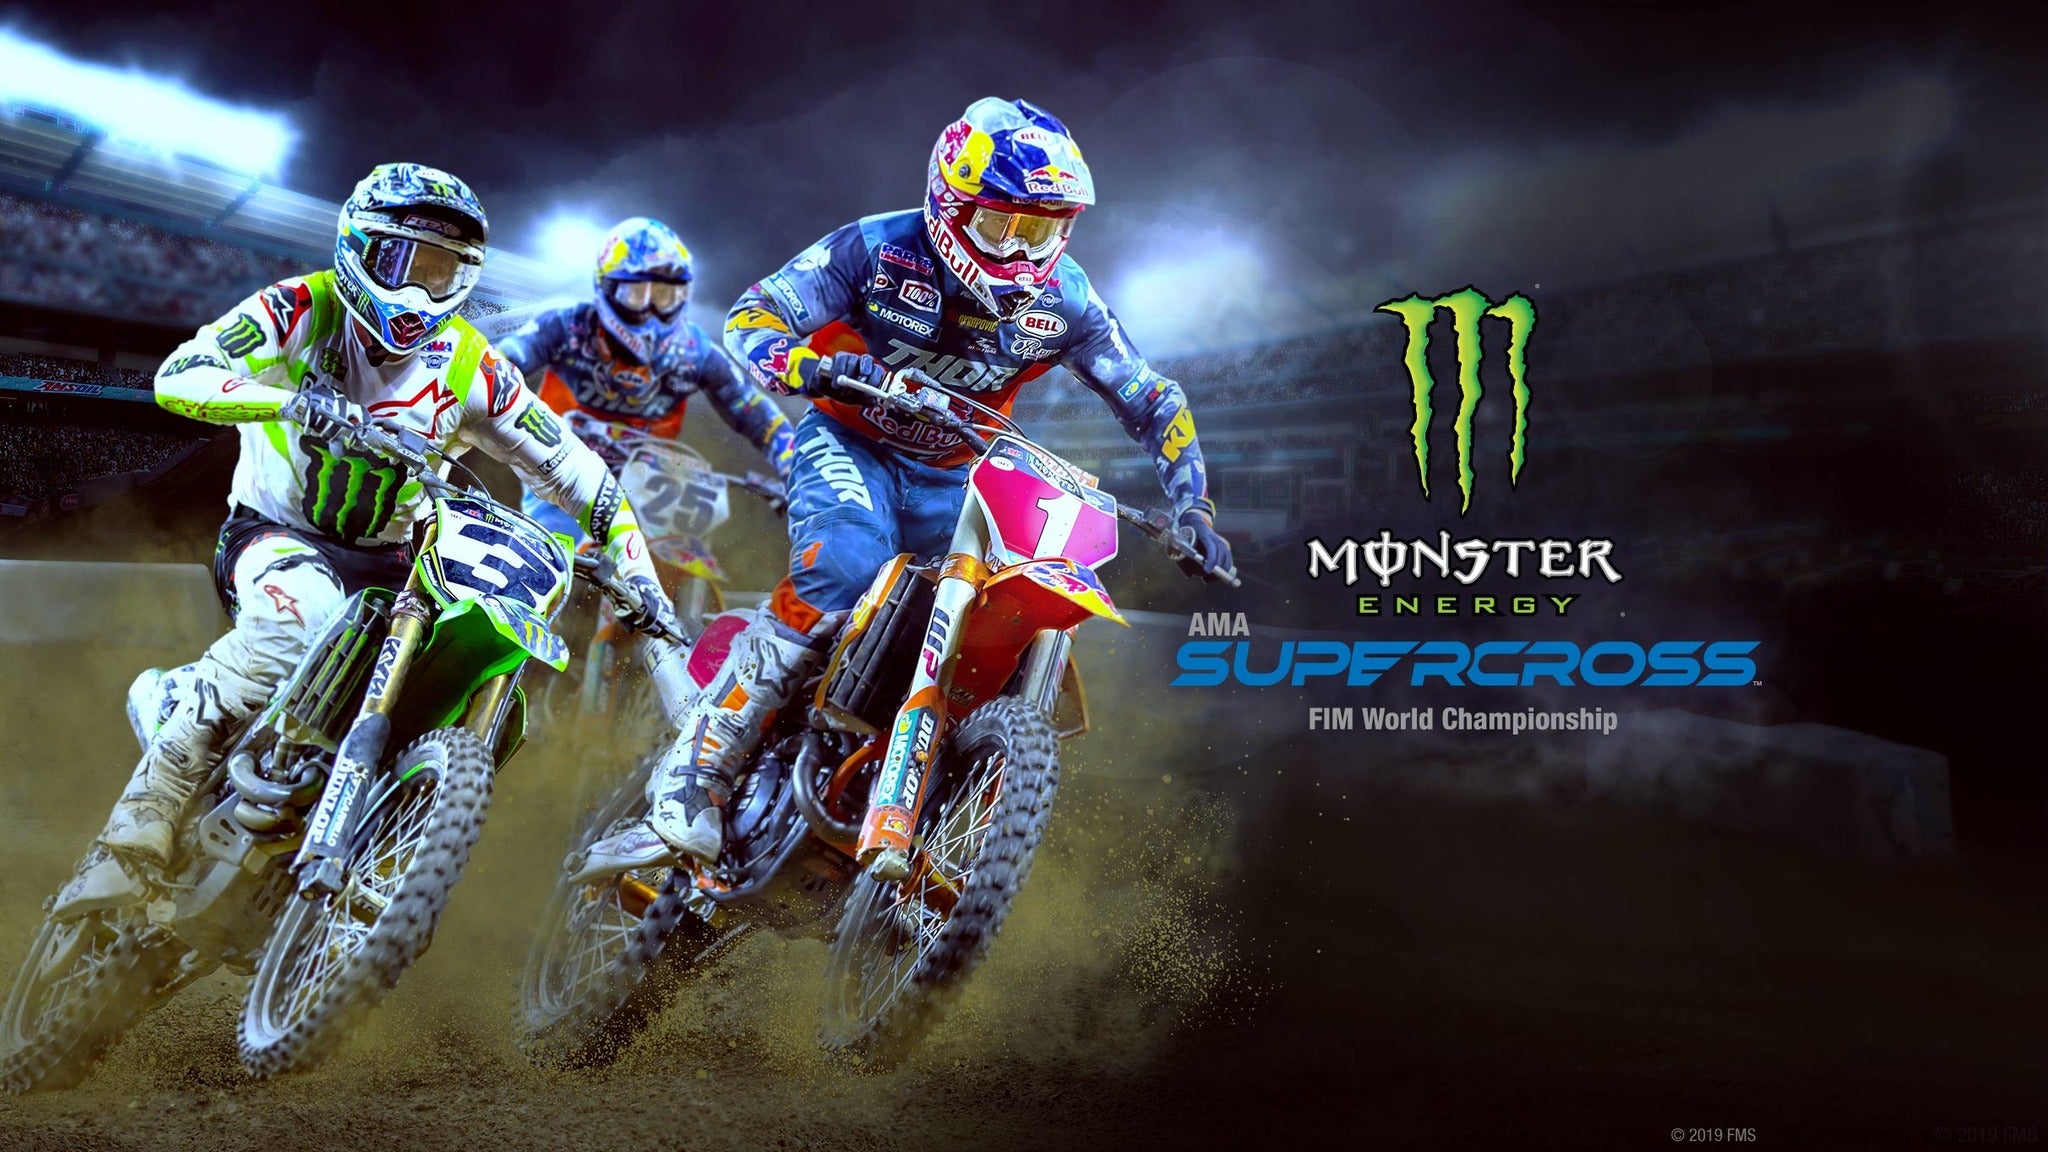 Monster Energy Supercross in Glendale promo photo for TM / Venue presale offer code